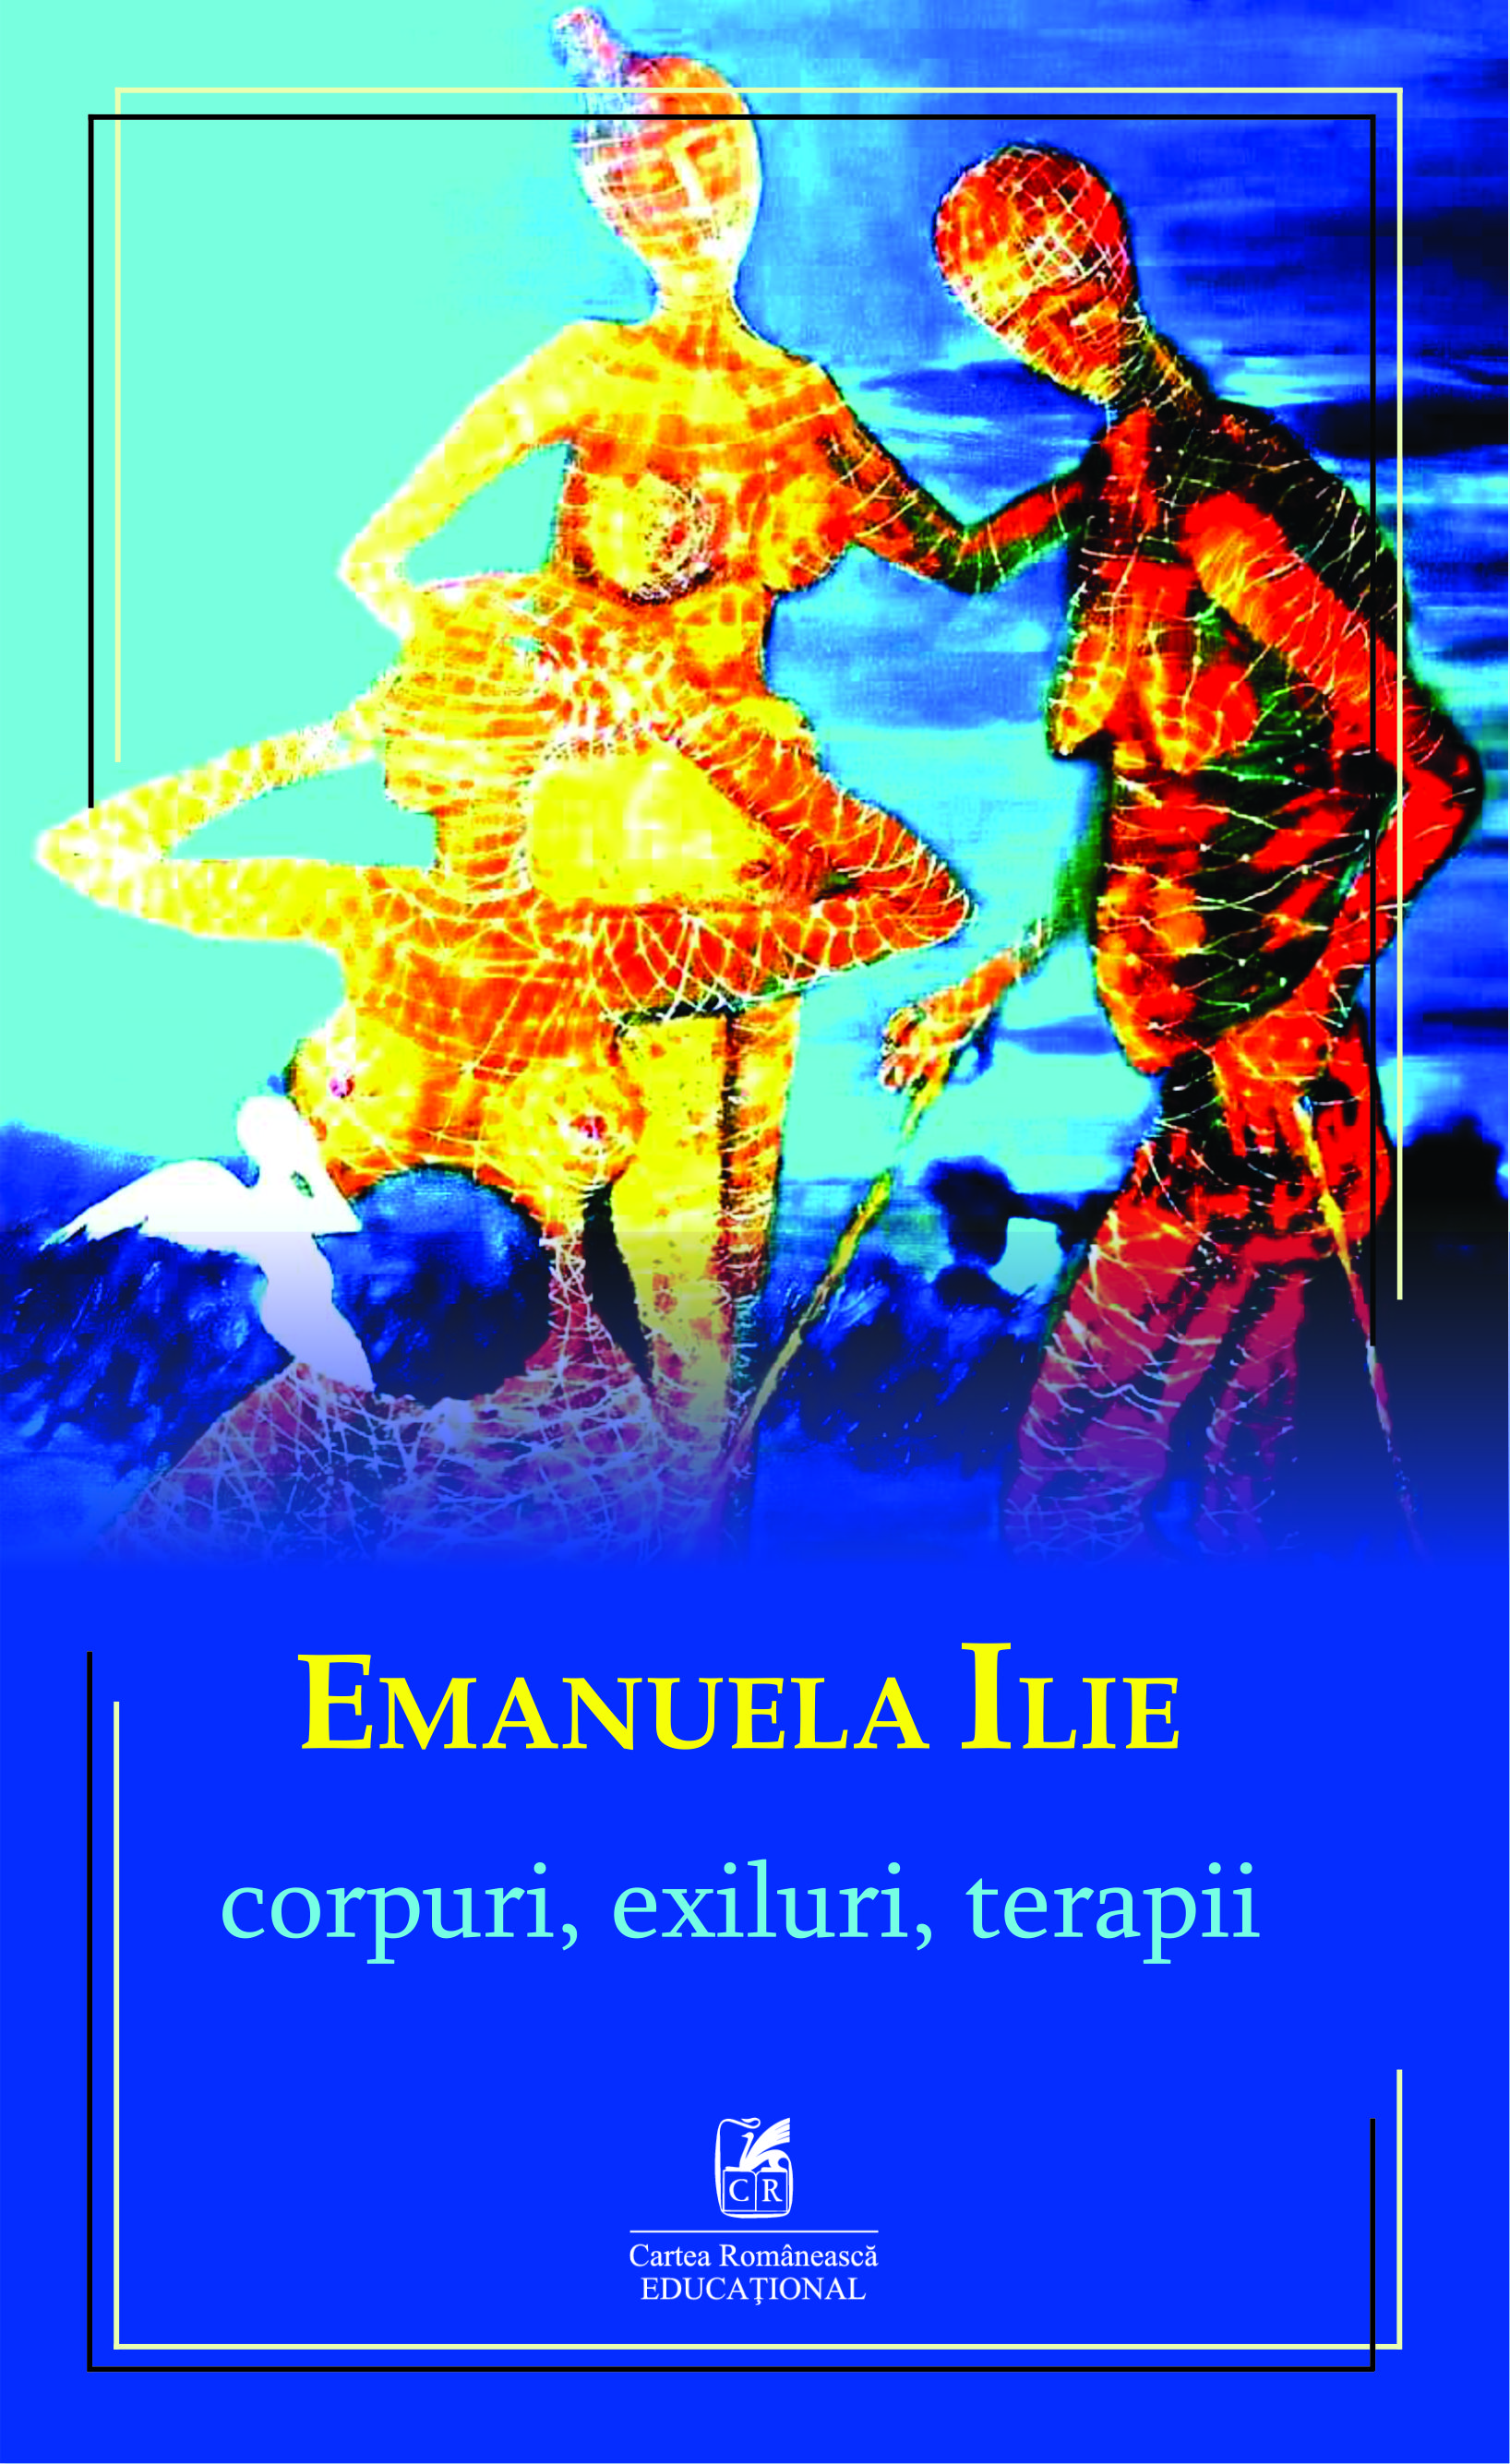 Corpuri, exiluri, terapii | Emanuela Ilie Cartea Romaneasca educational Carte